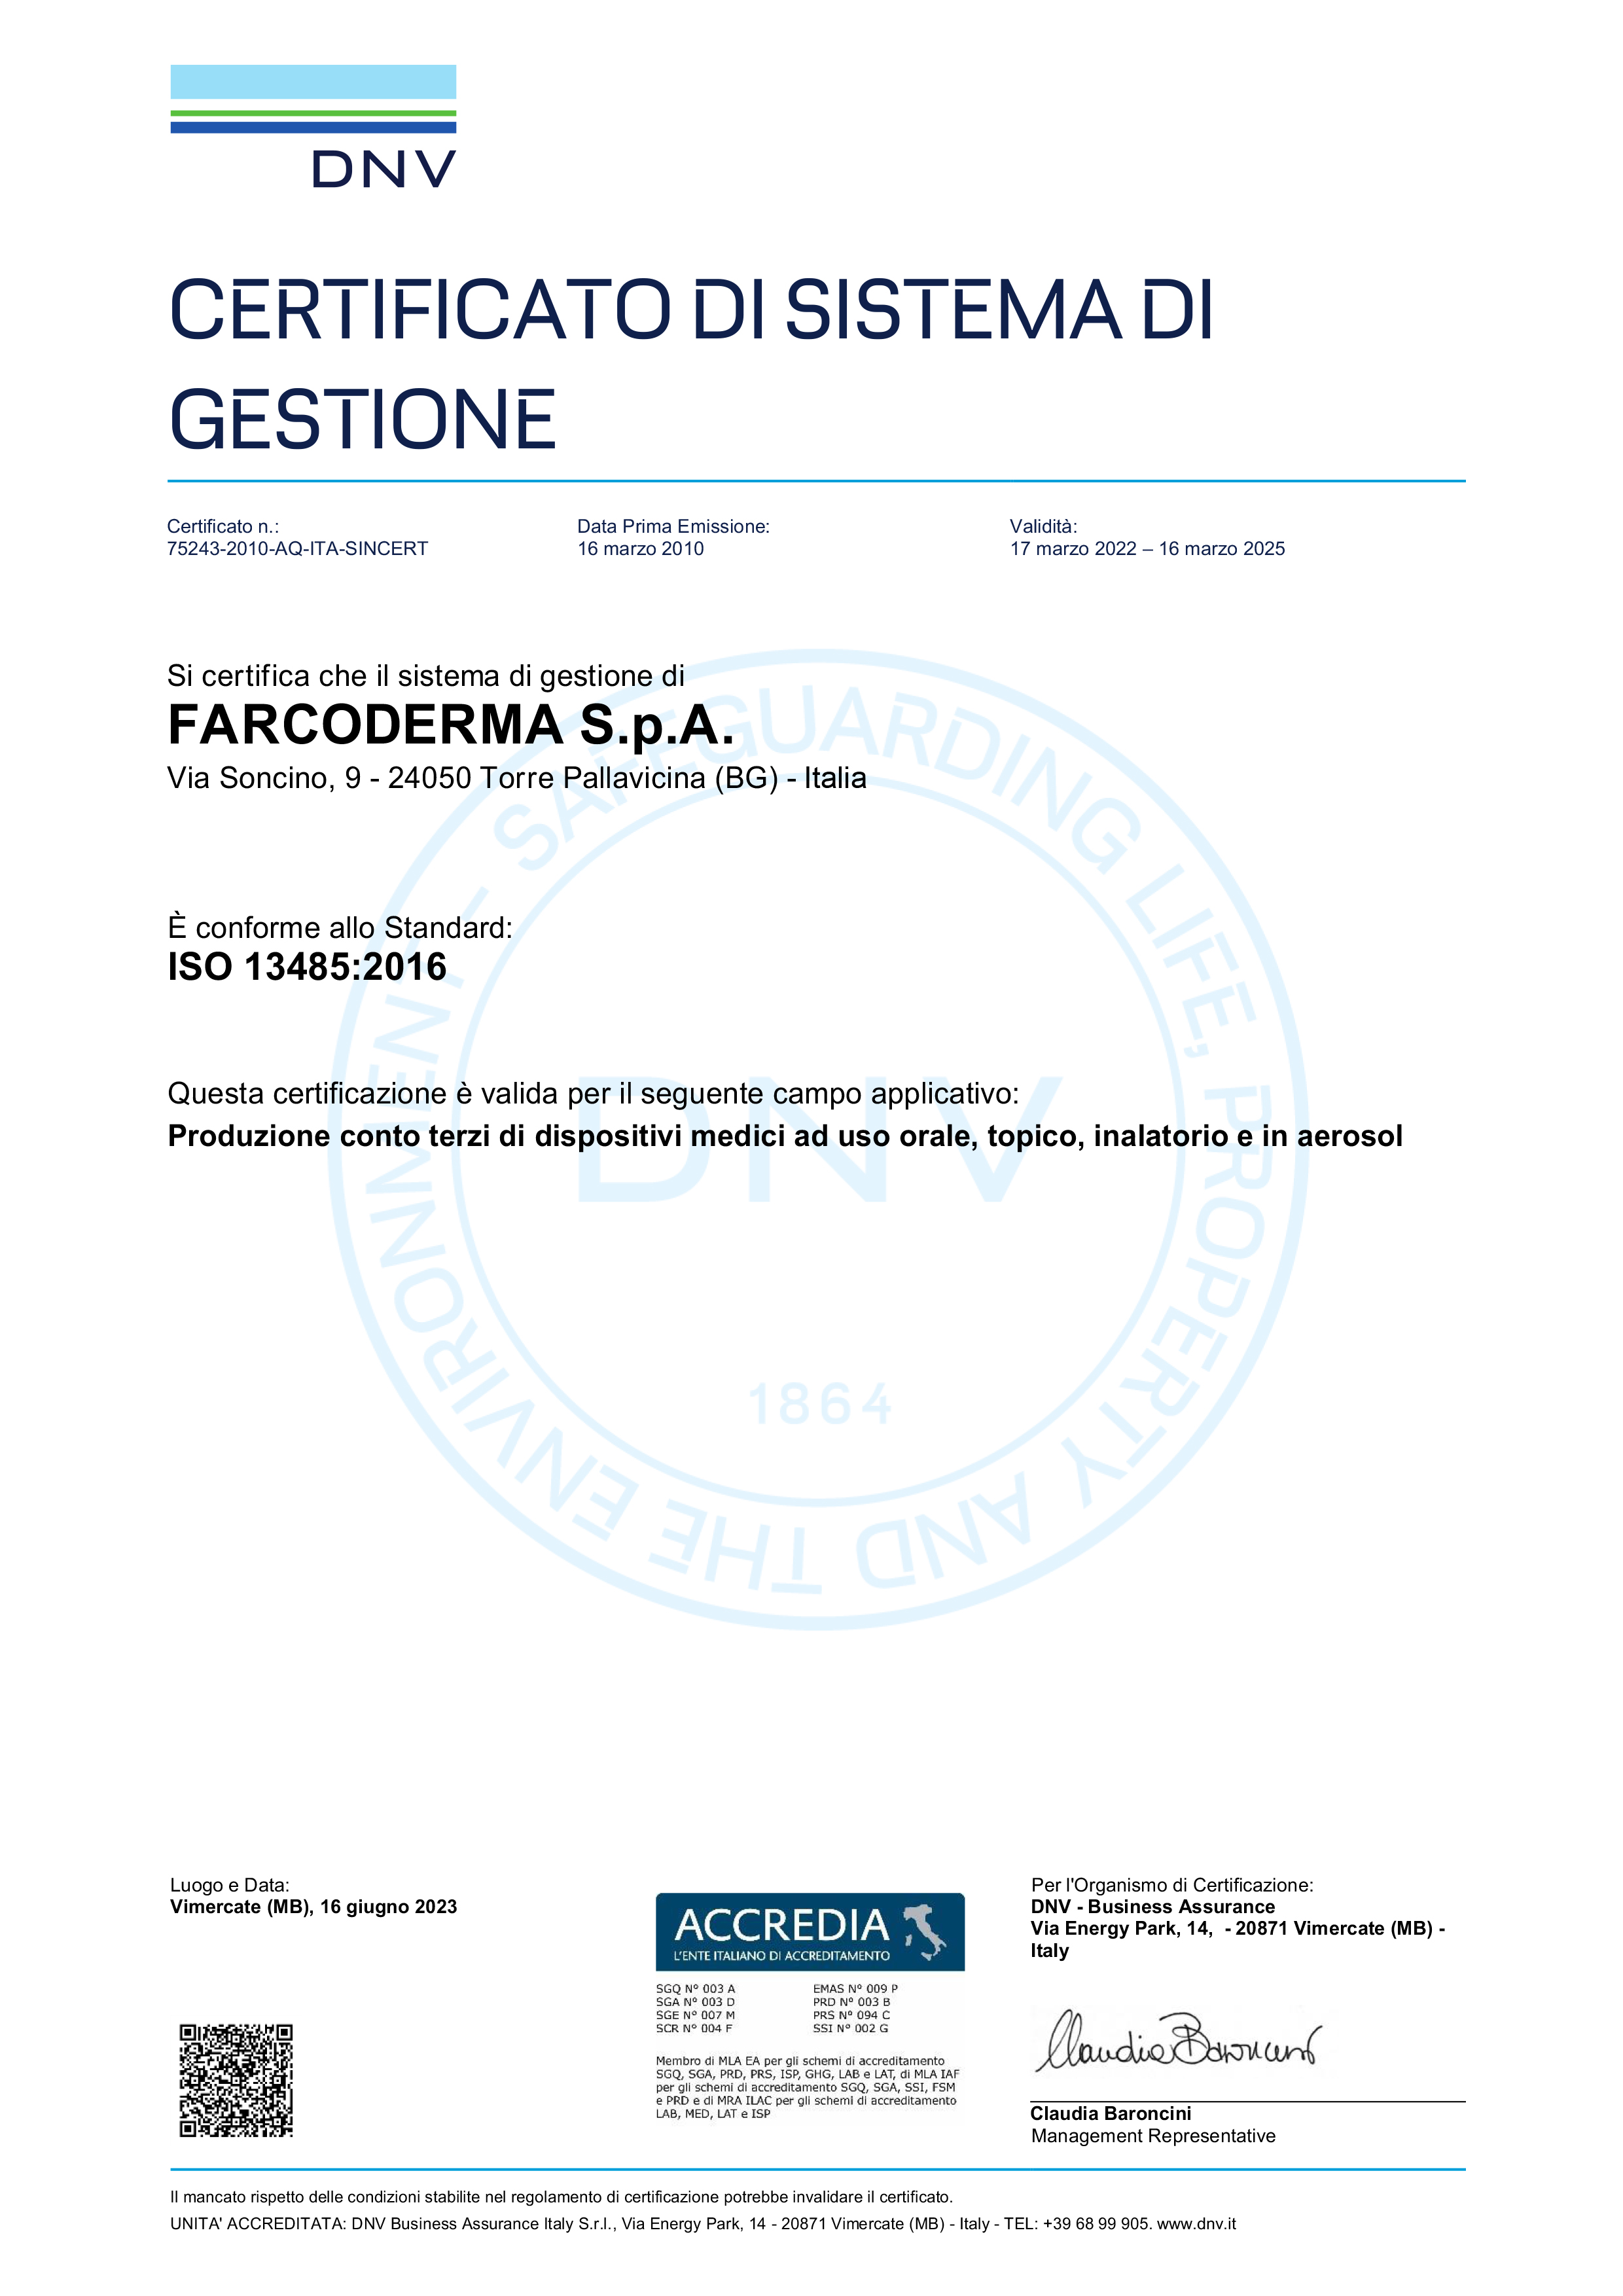 Certificazione UNI EN ISO 13485